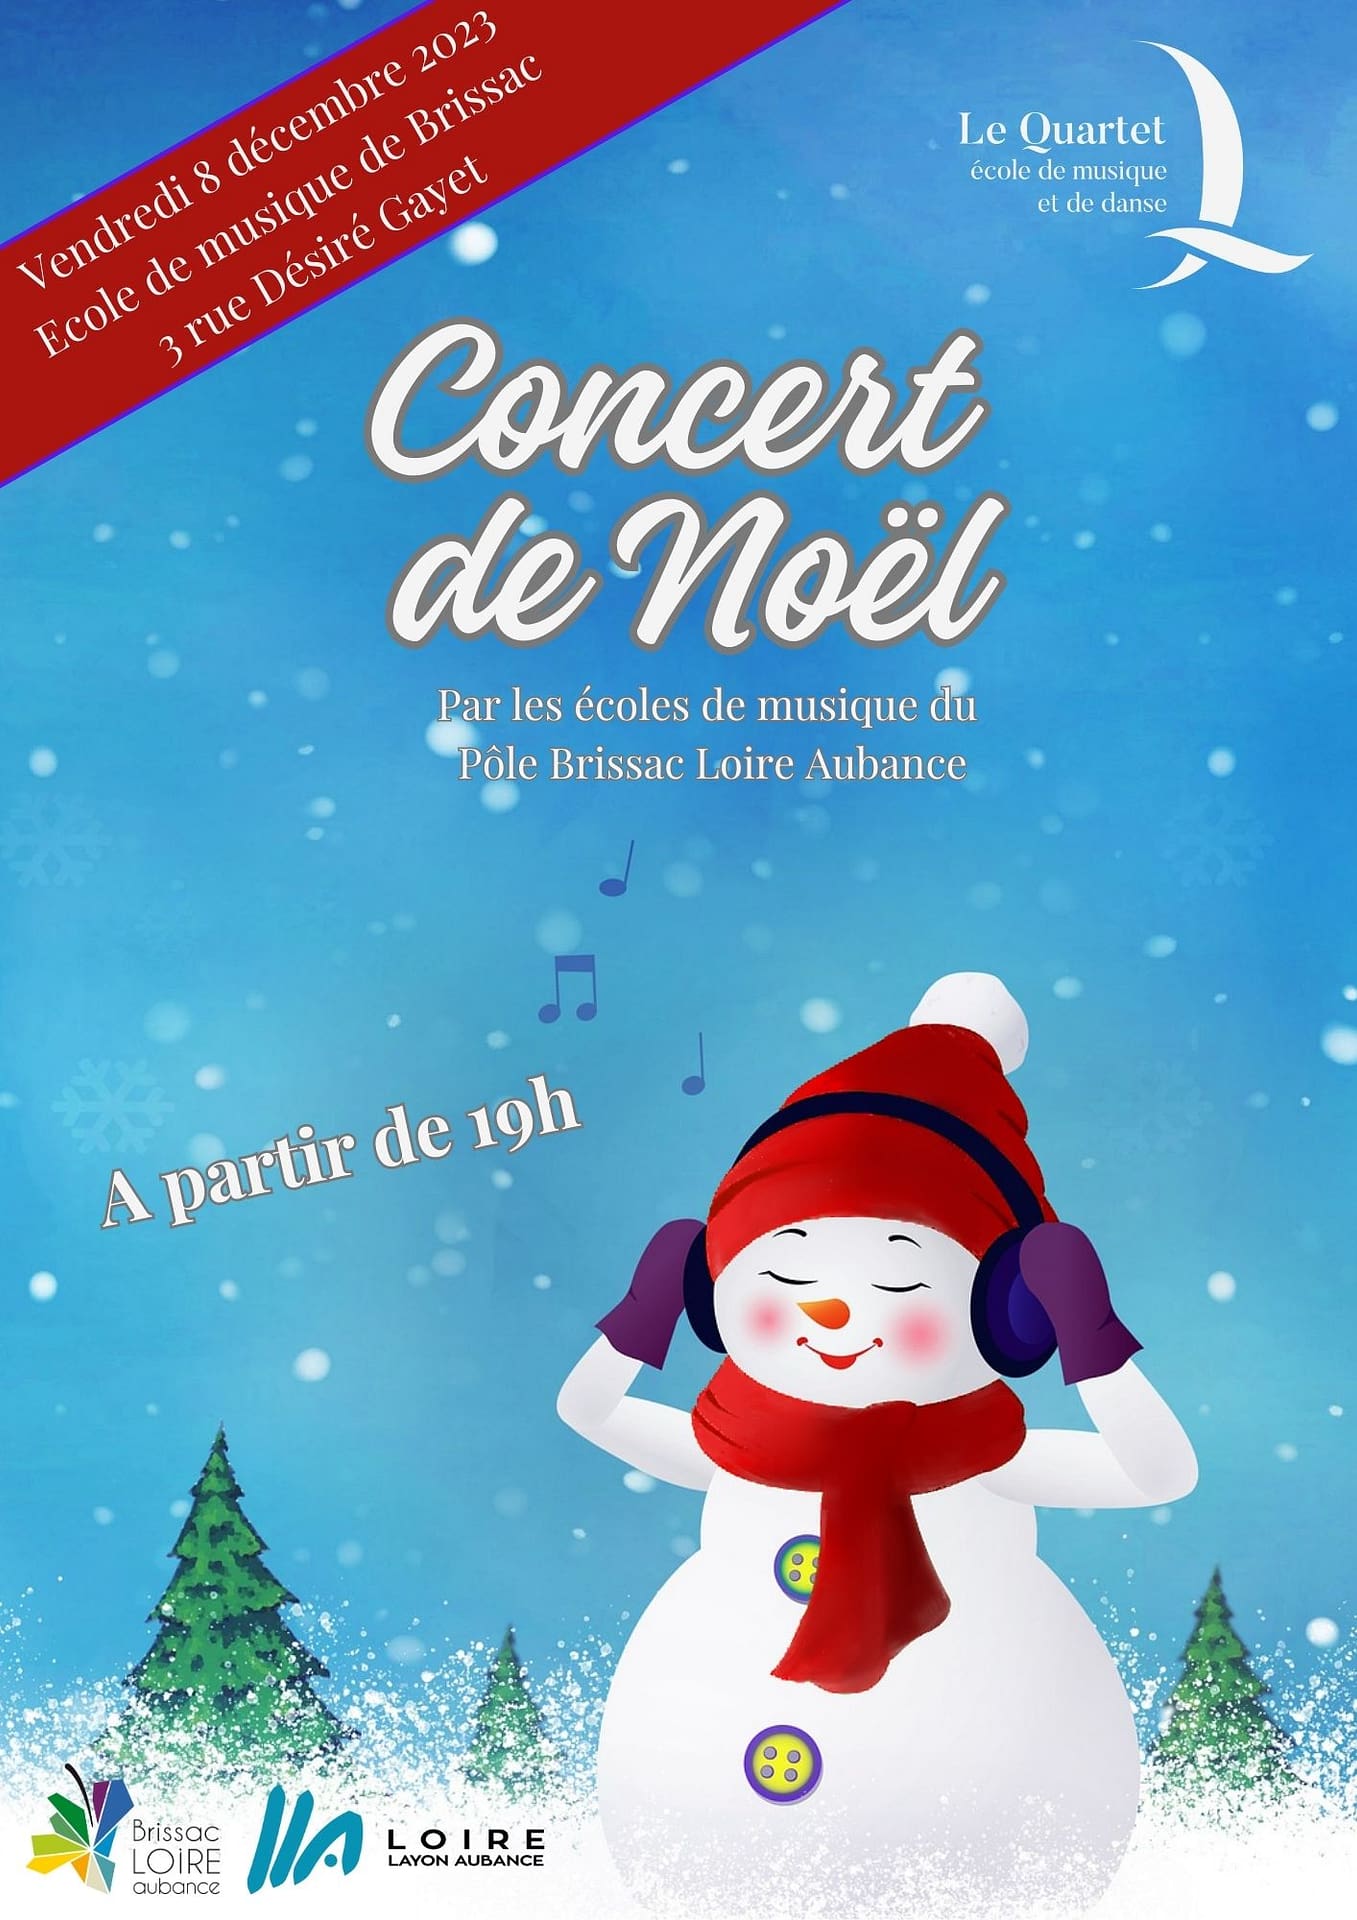 Concert de Noël des élèves de Brissac Loire Aubance